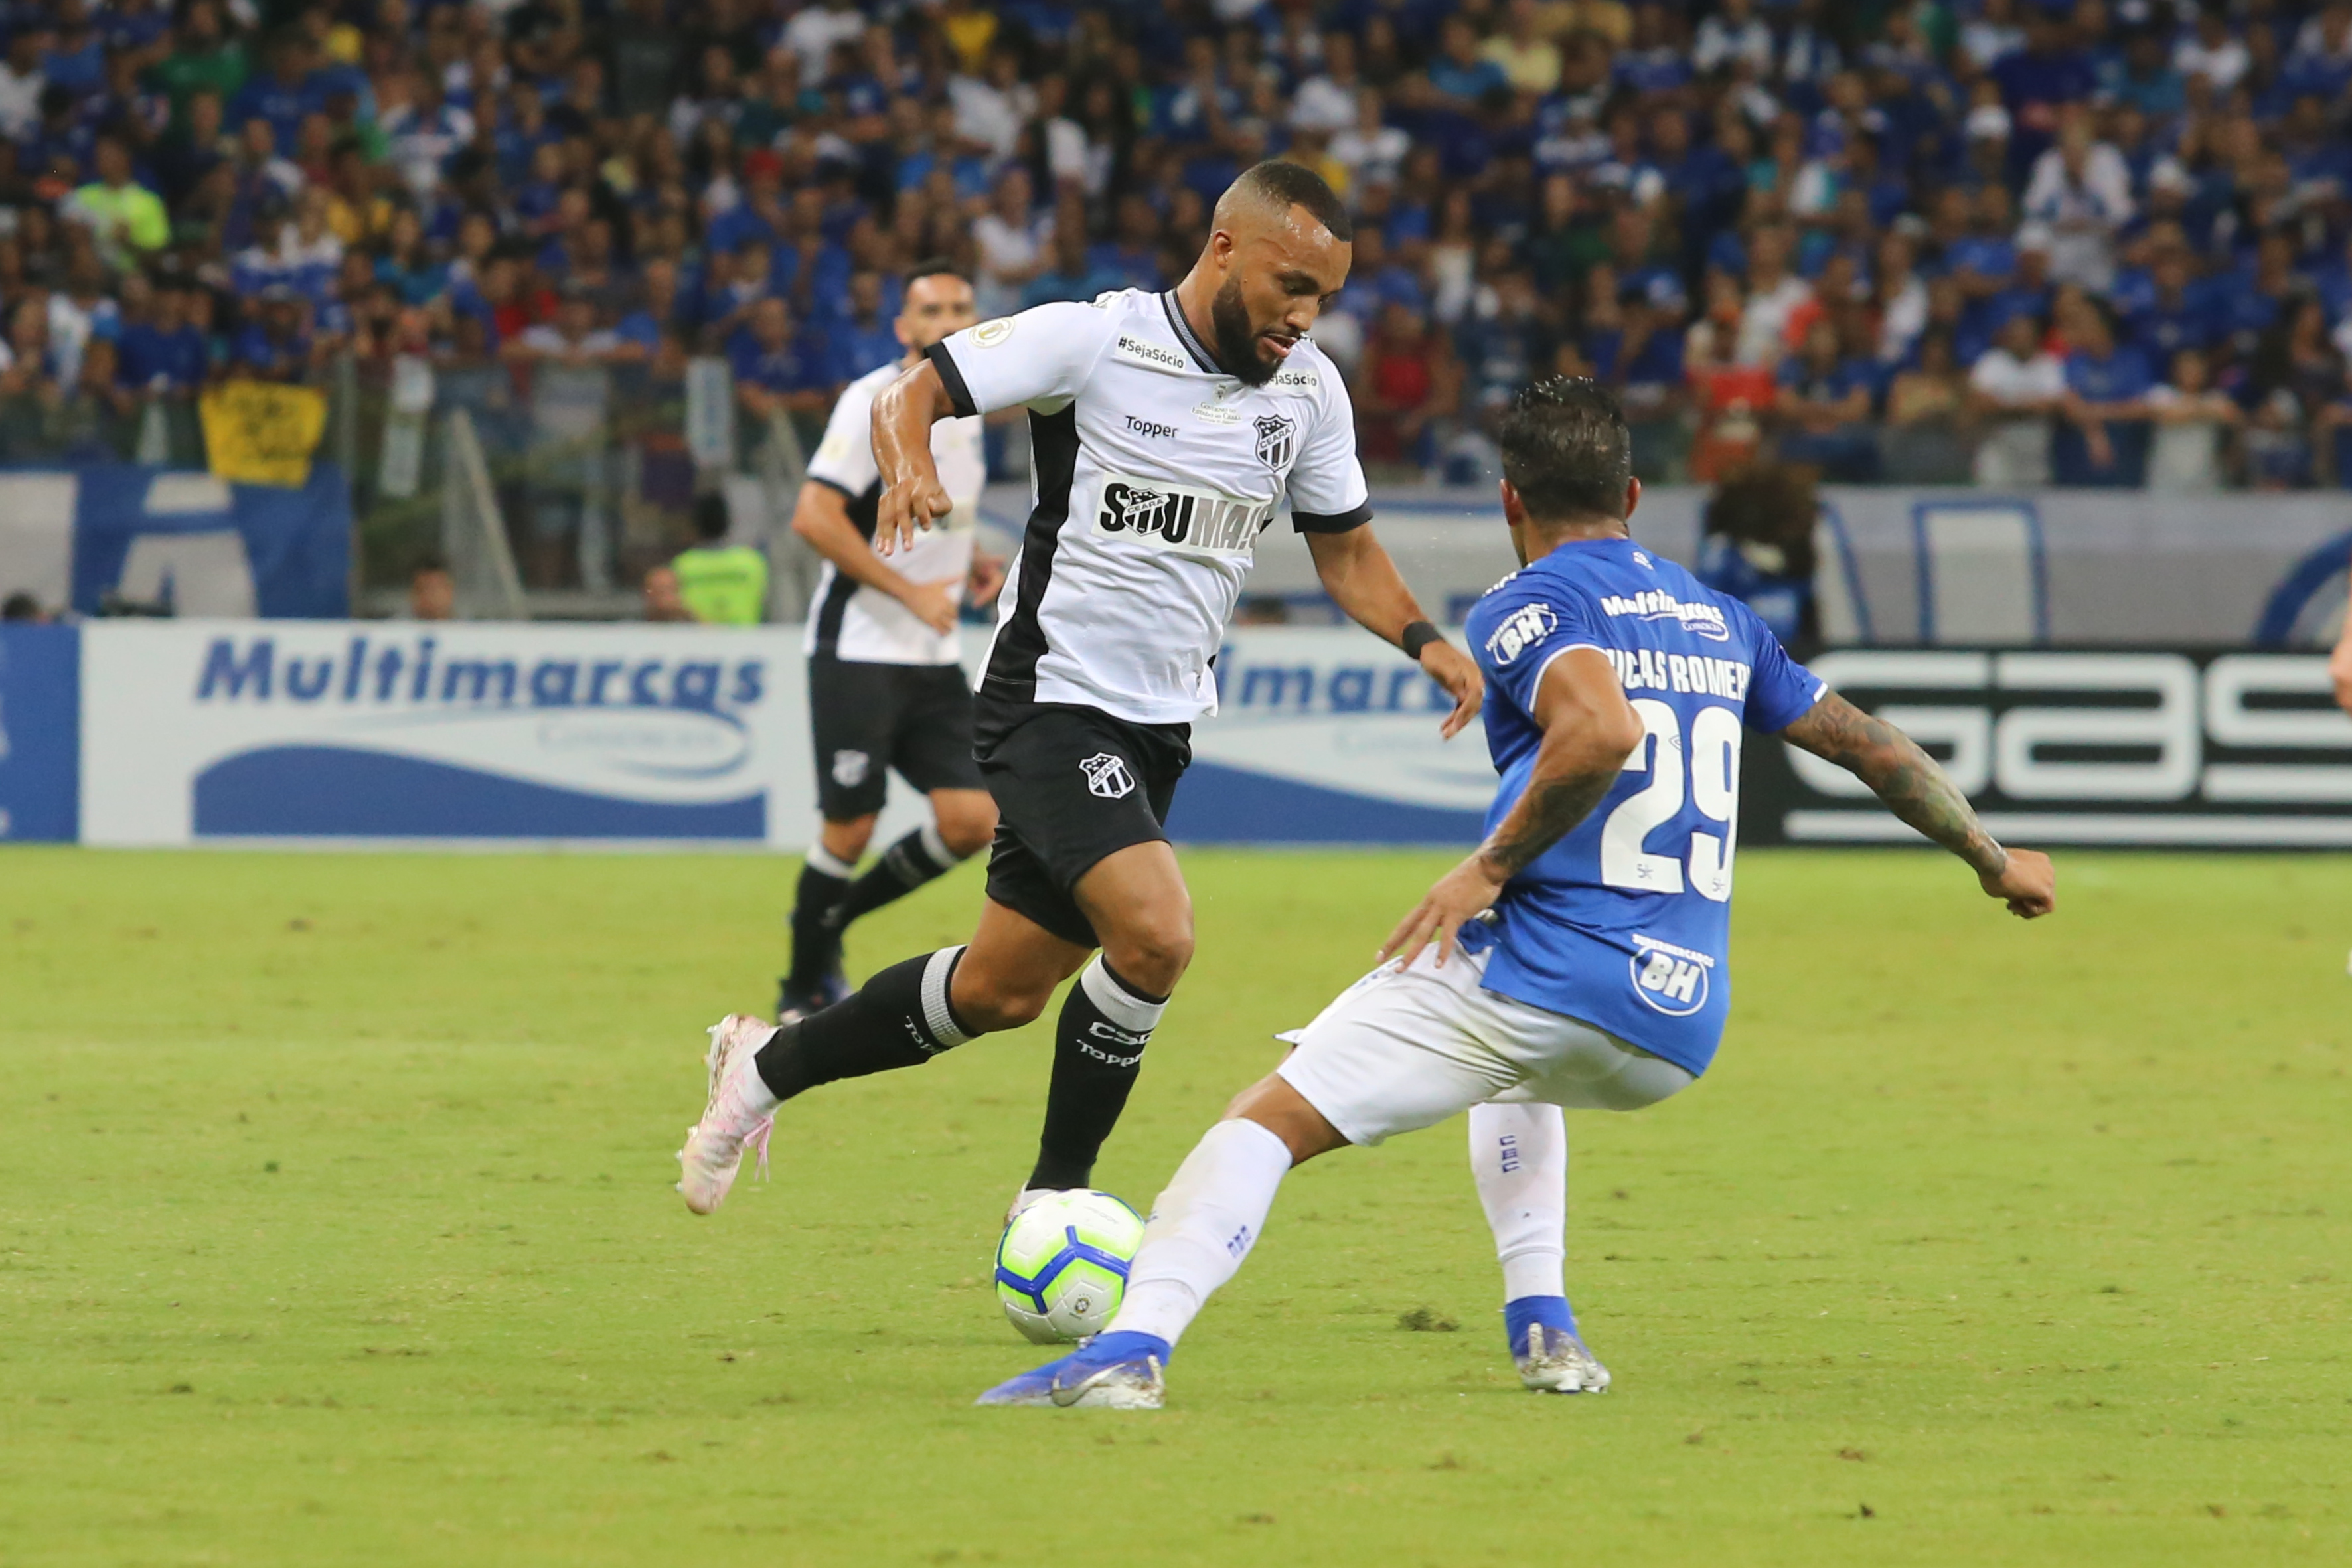 No Mineirão, diante do Cruzeiro, Ceará joga bem, mas perde por placar mínimo